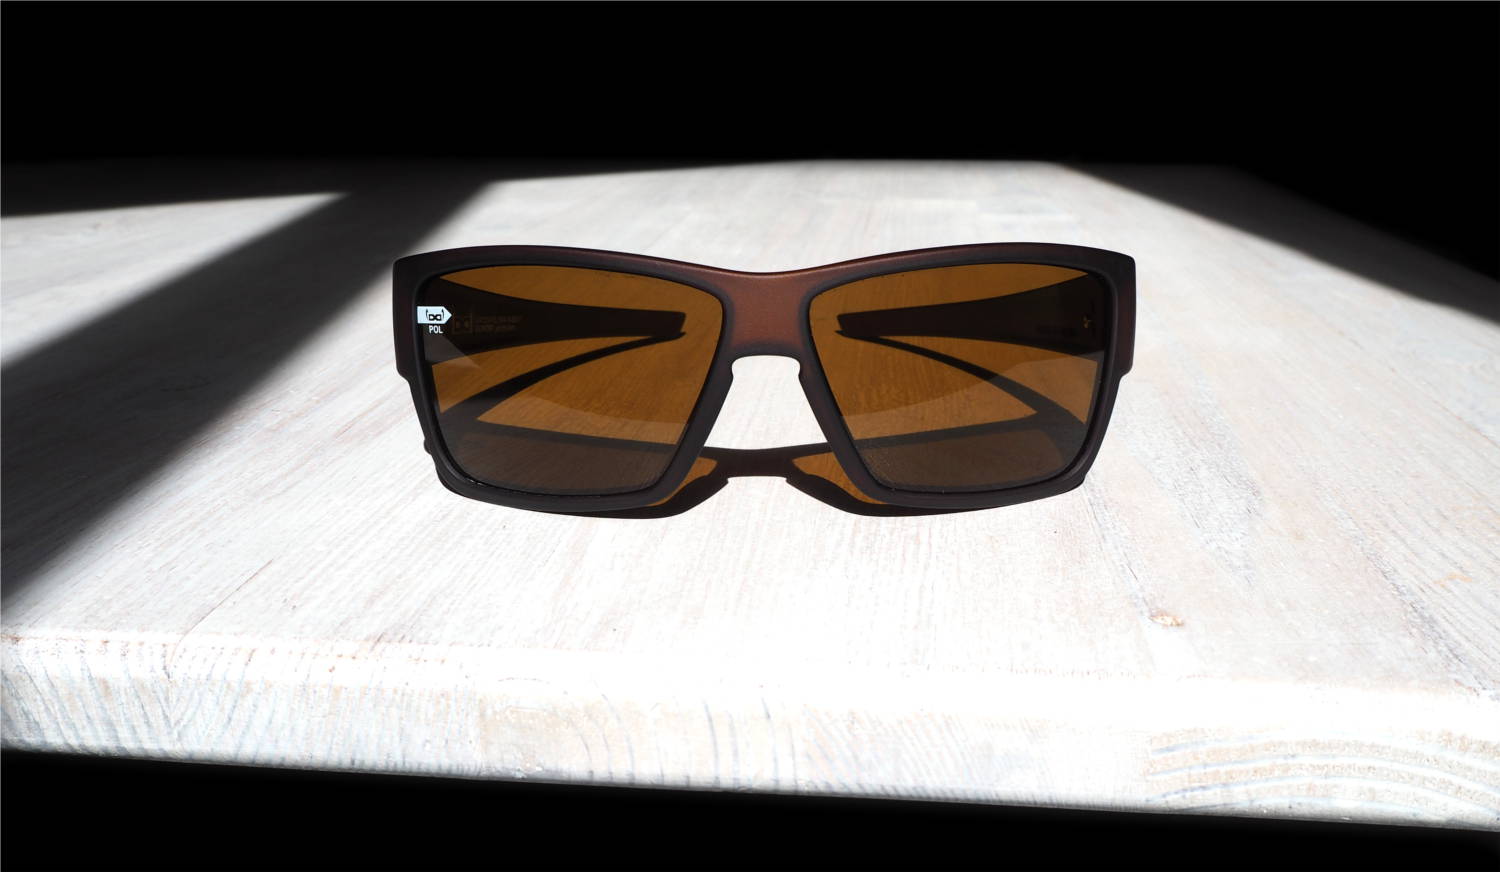 Sonnenbrille zum Laufen - Test der gloryfy G14 Sportbrille mit Style